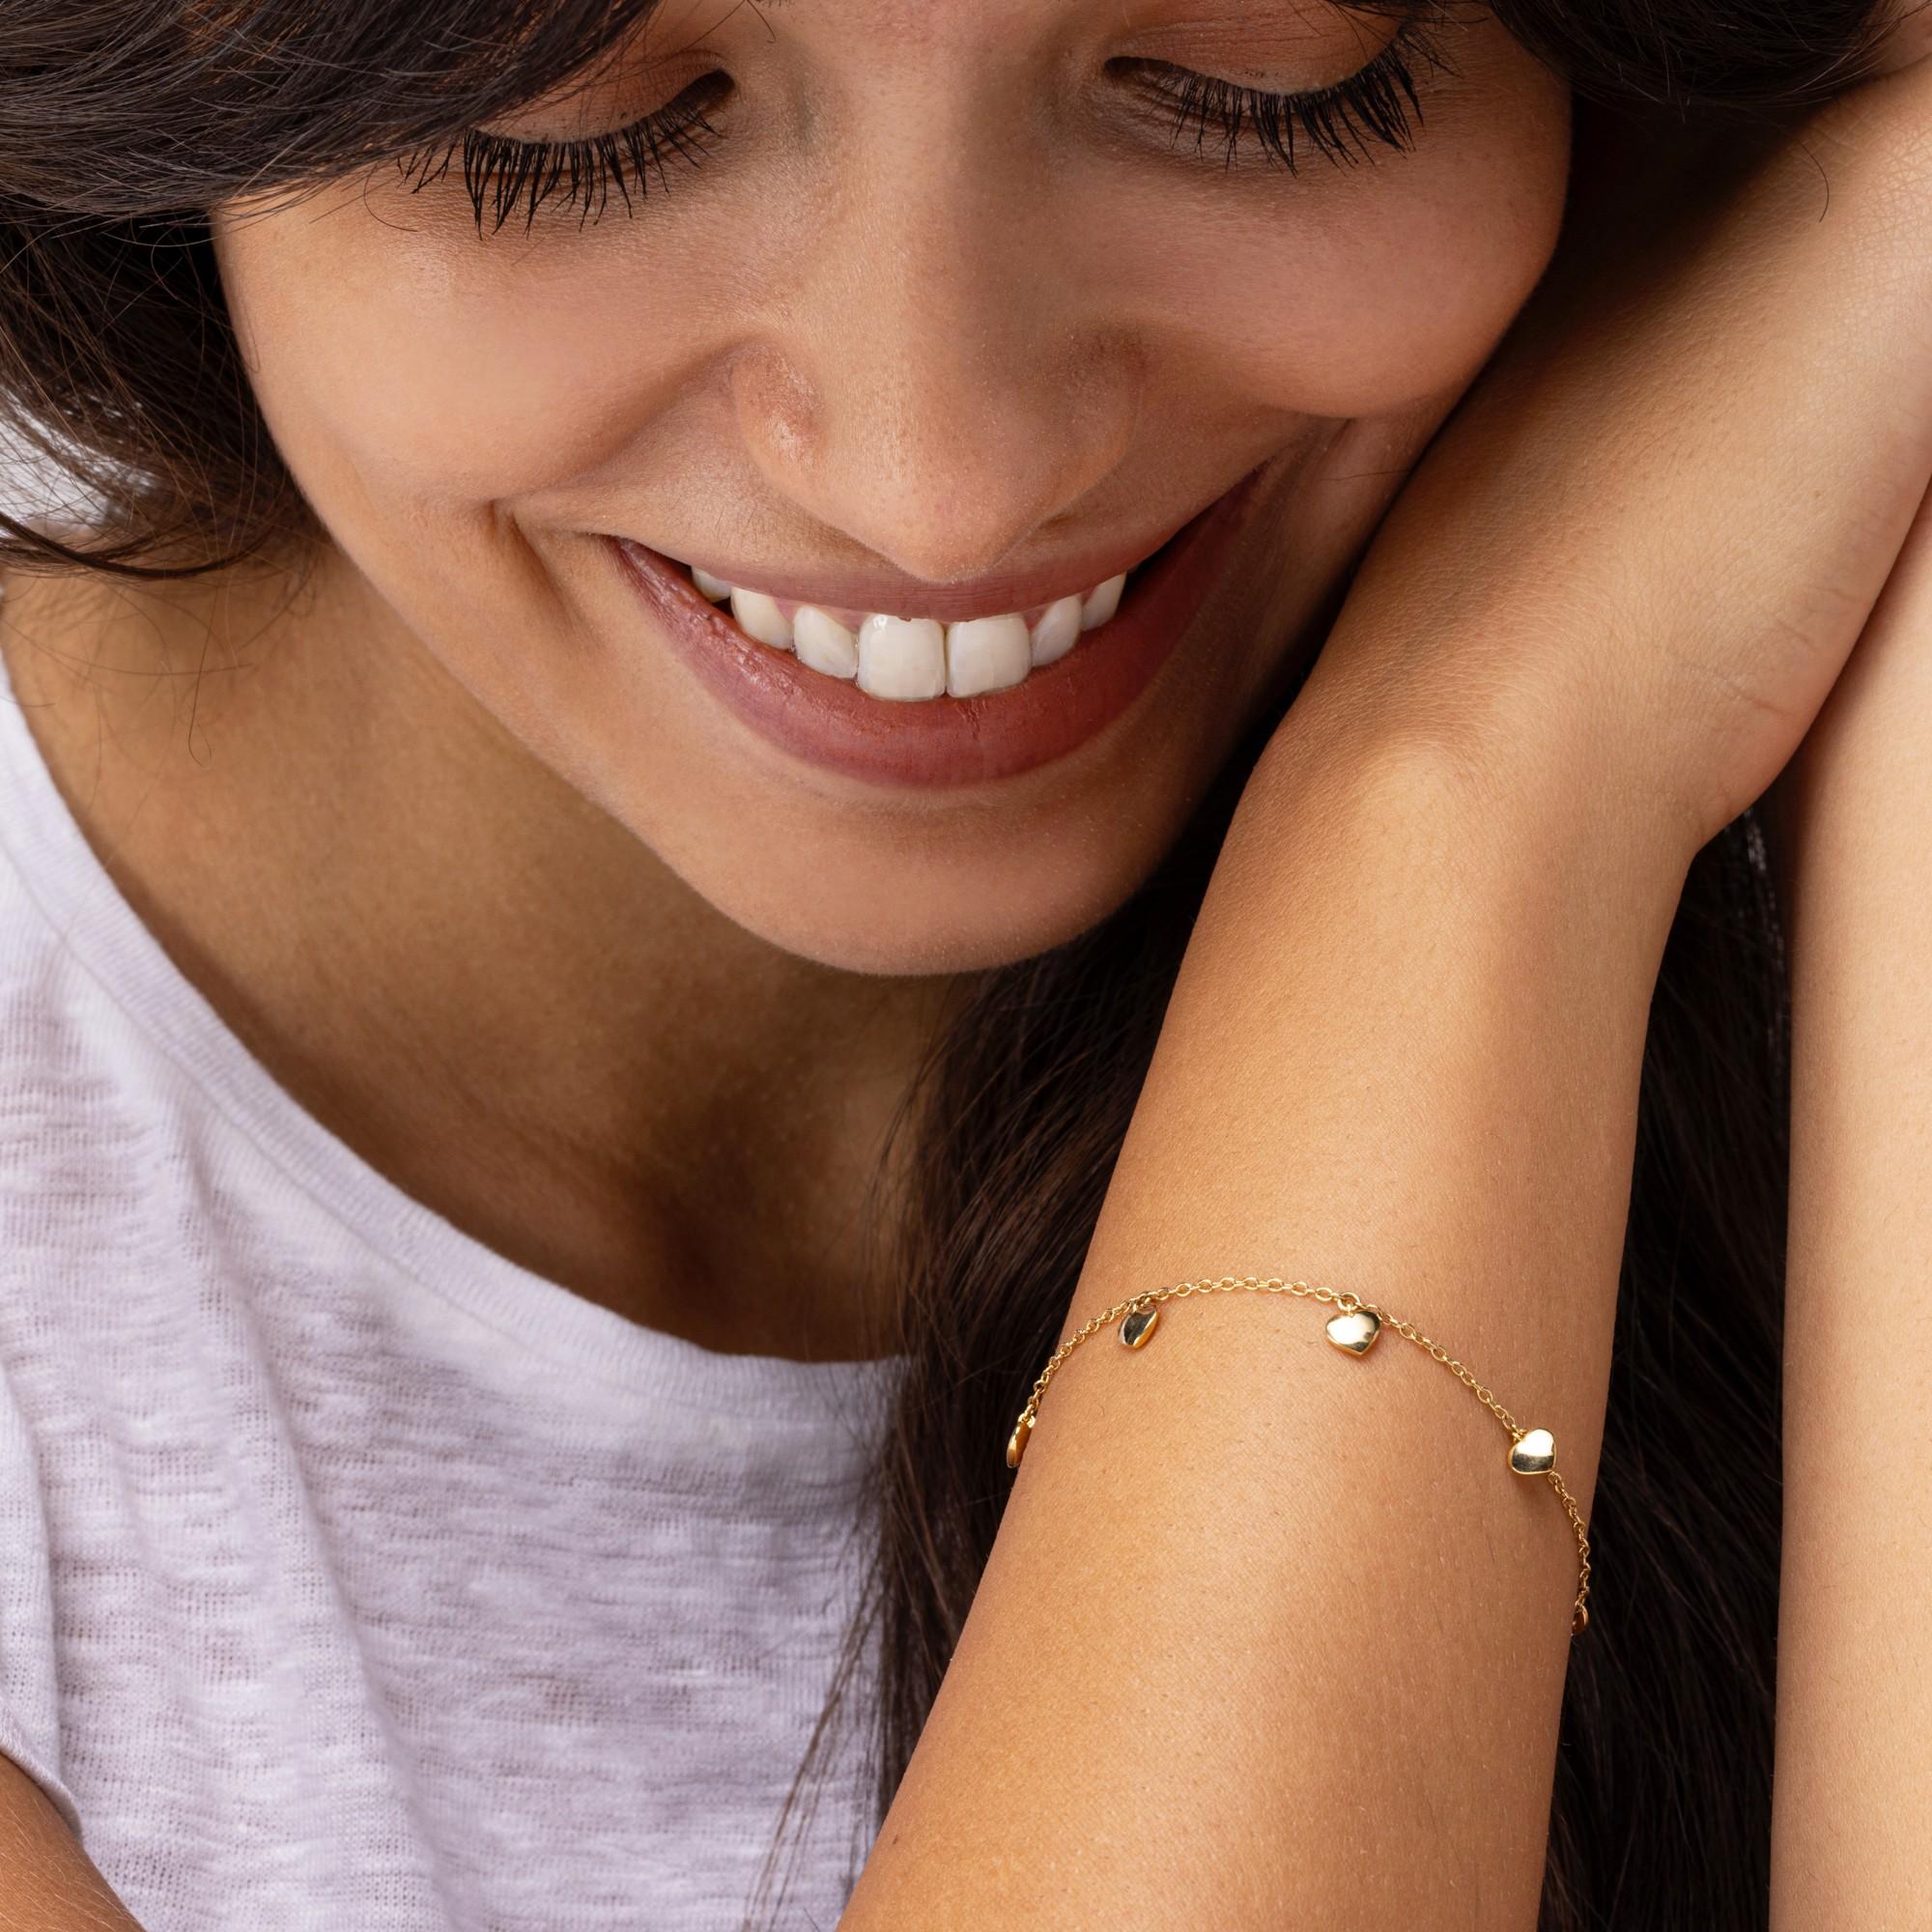 Alex Jona Design-Kollektion, handgefertigt in Italien, Armband aus 18 Karat Gelbgold mit kleinen Herzanhängern.

Die Juwelen von Alex Jona zeichnen sich nicht nur durch ihr besonderes Design und die hervorragende Qualität der Edelsteine aus, sondern